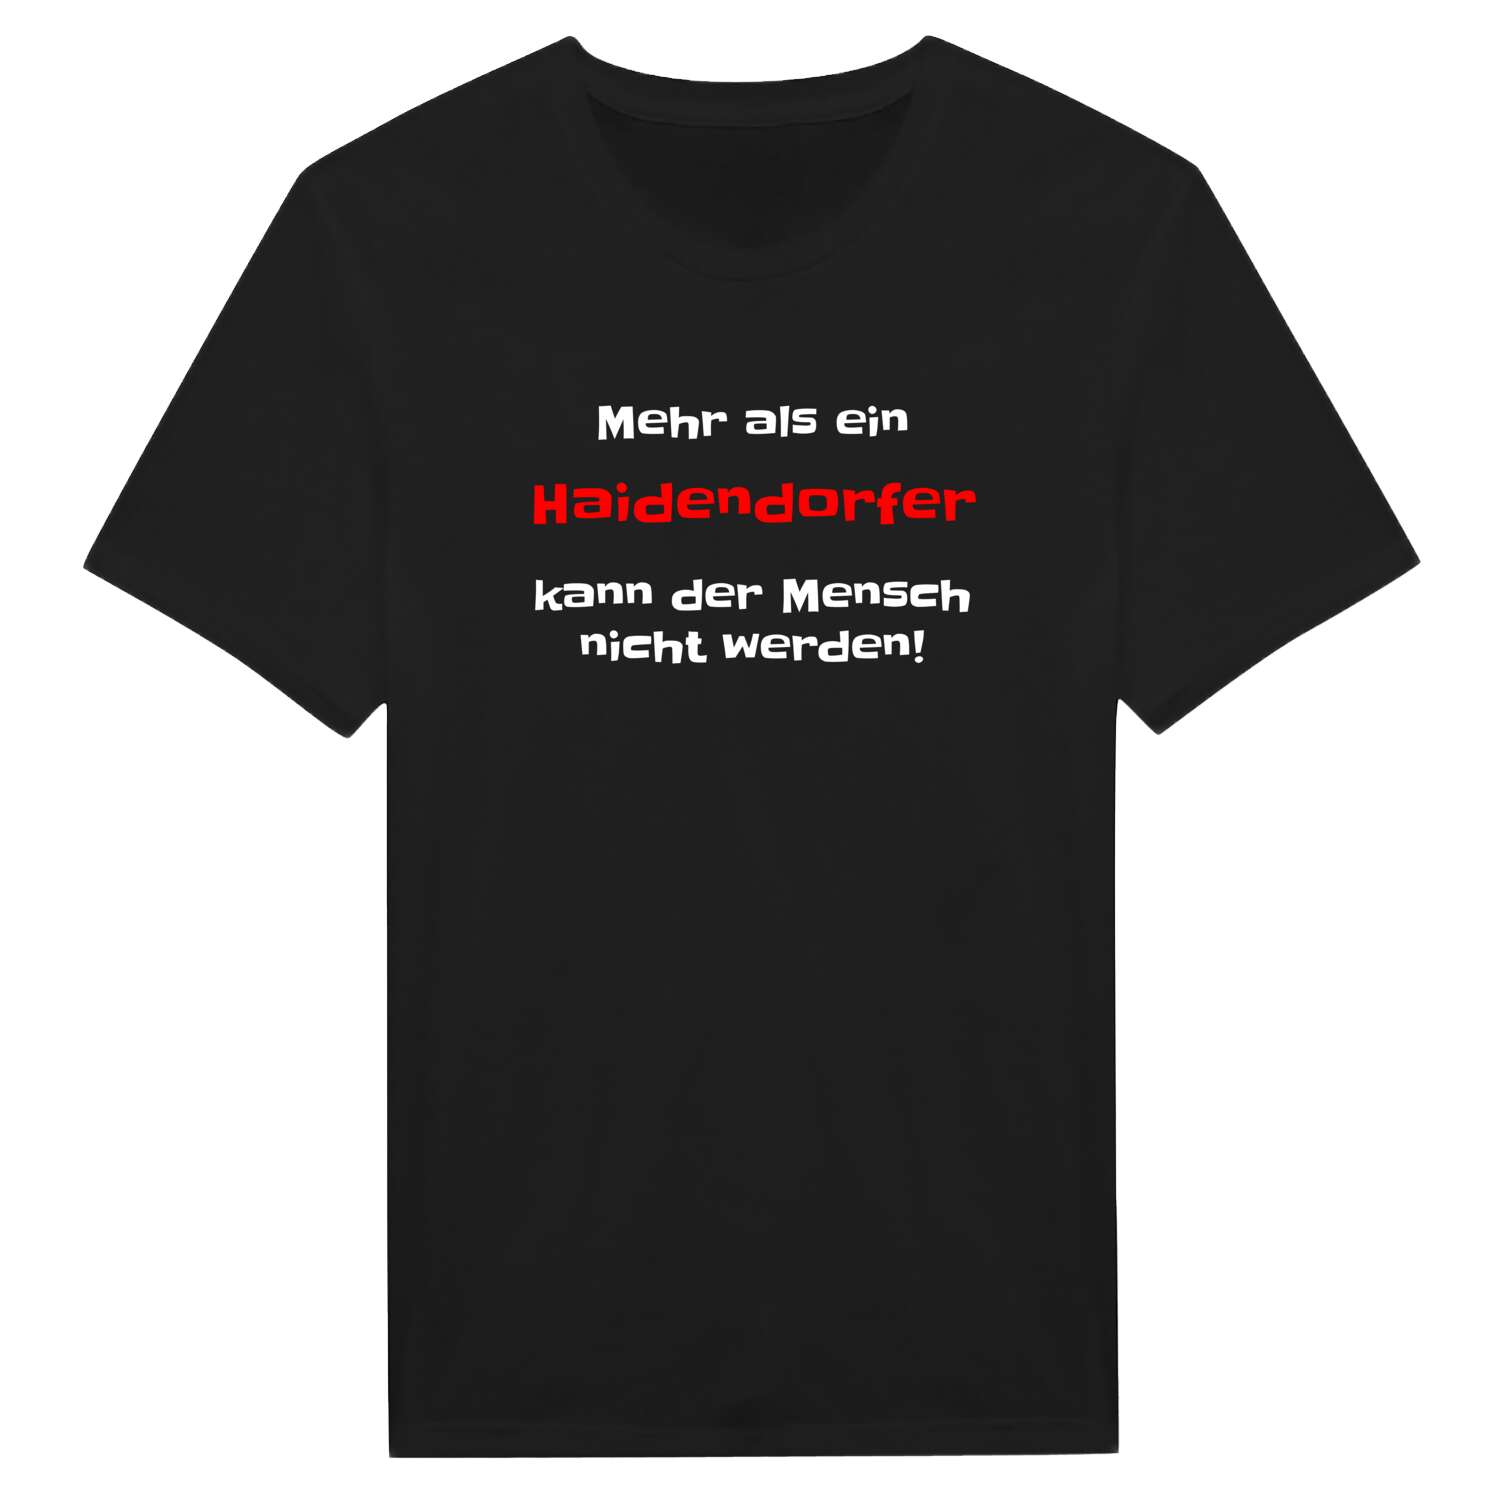 Haidendorf T-Shirt »Mehr als ein«